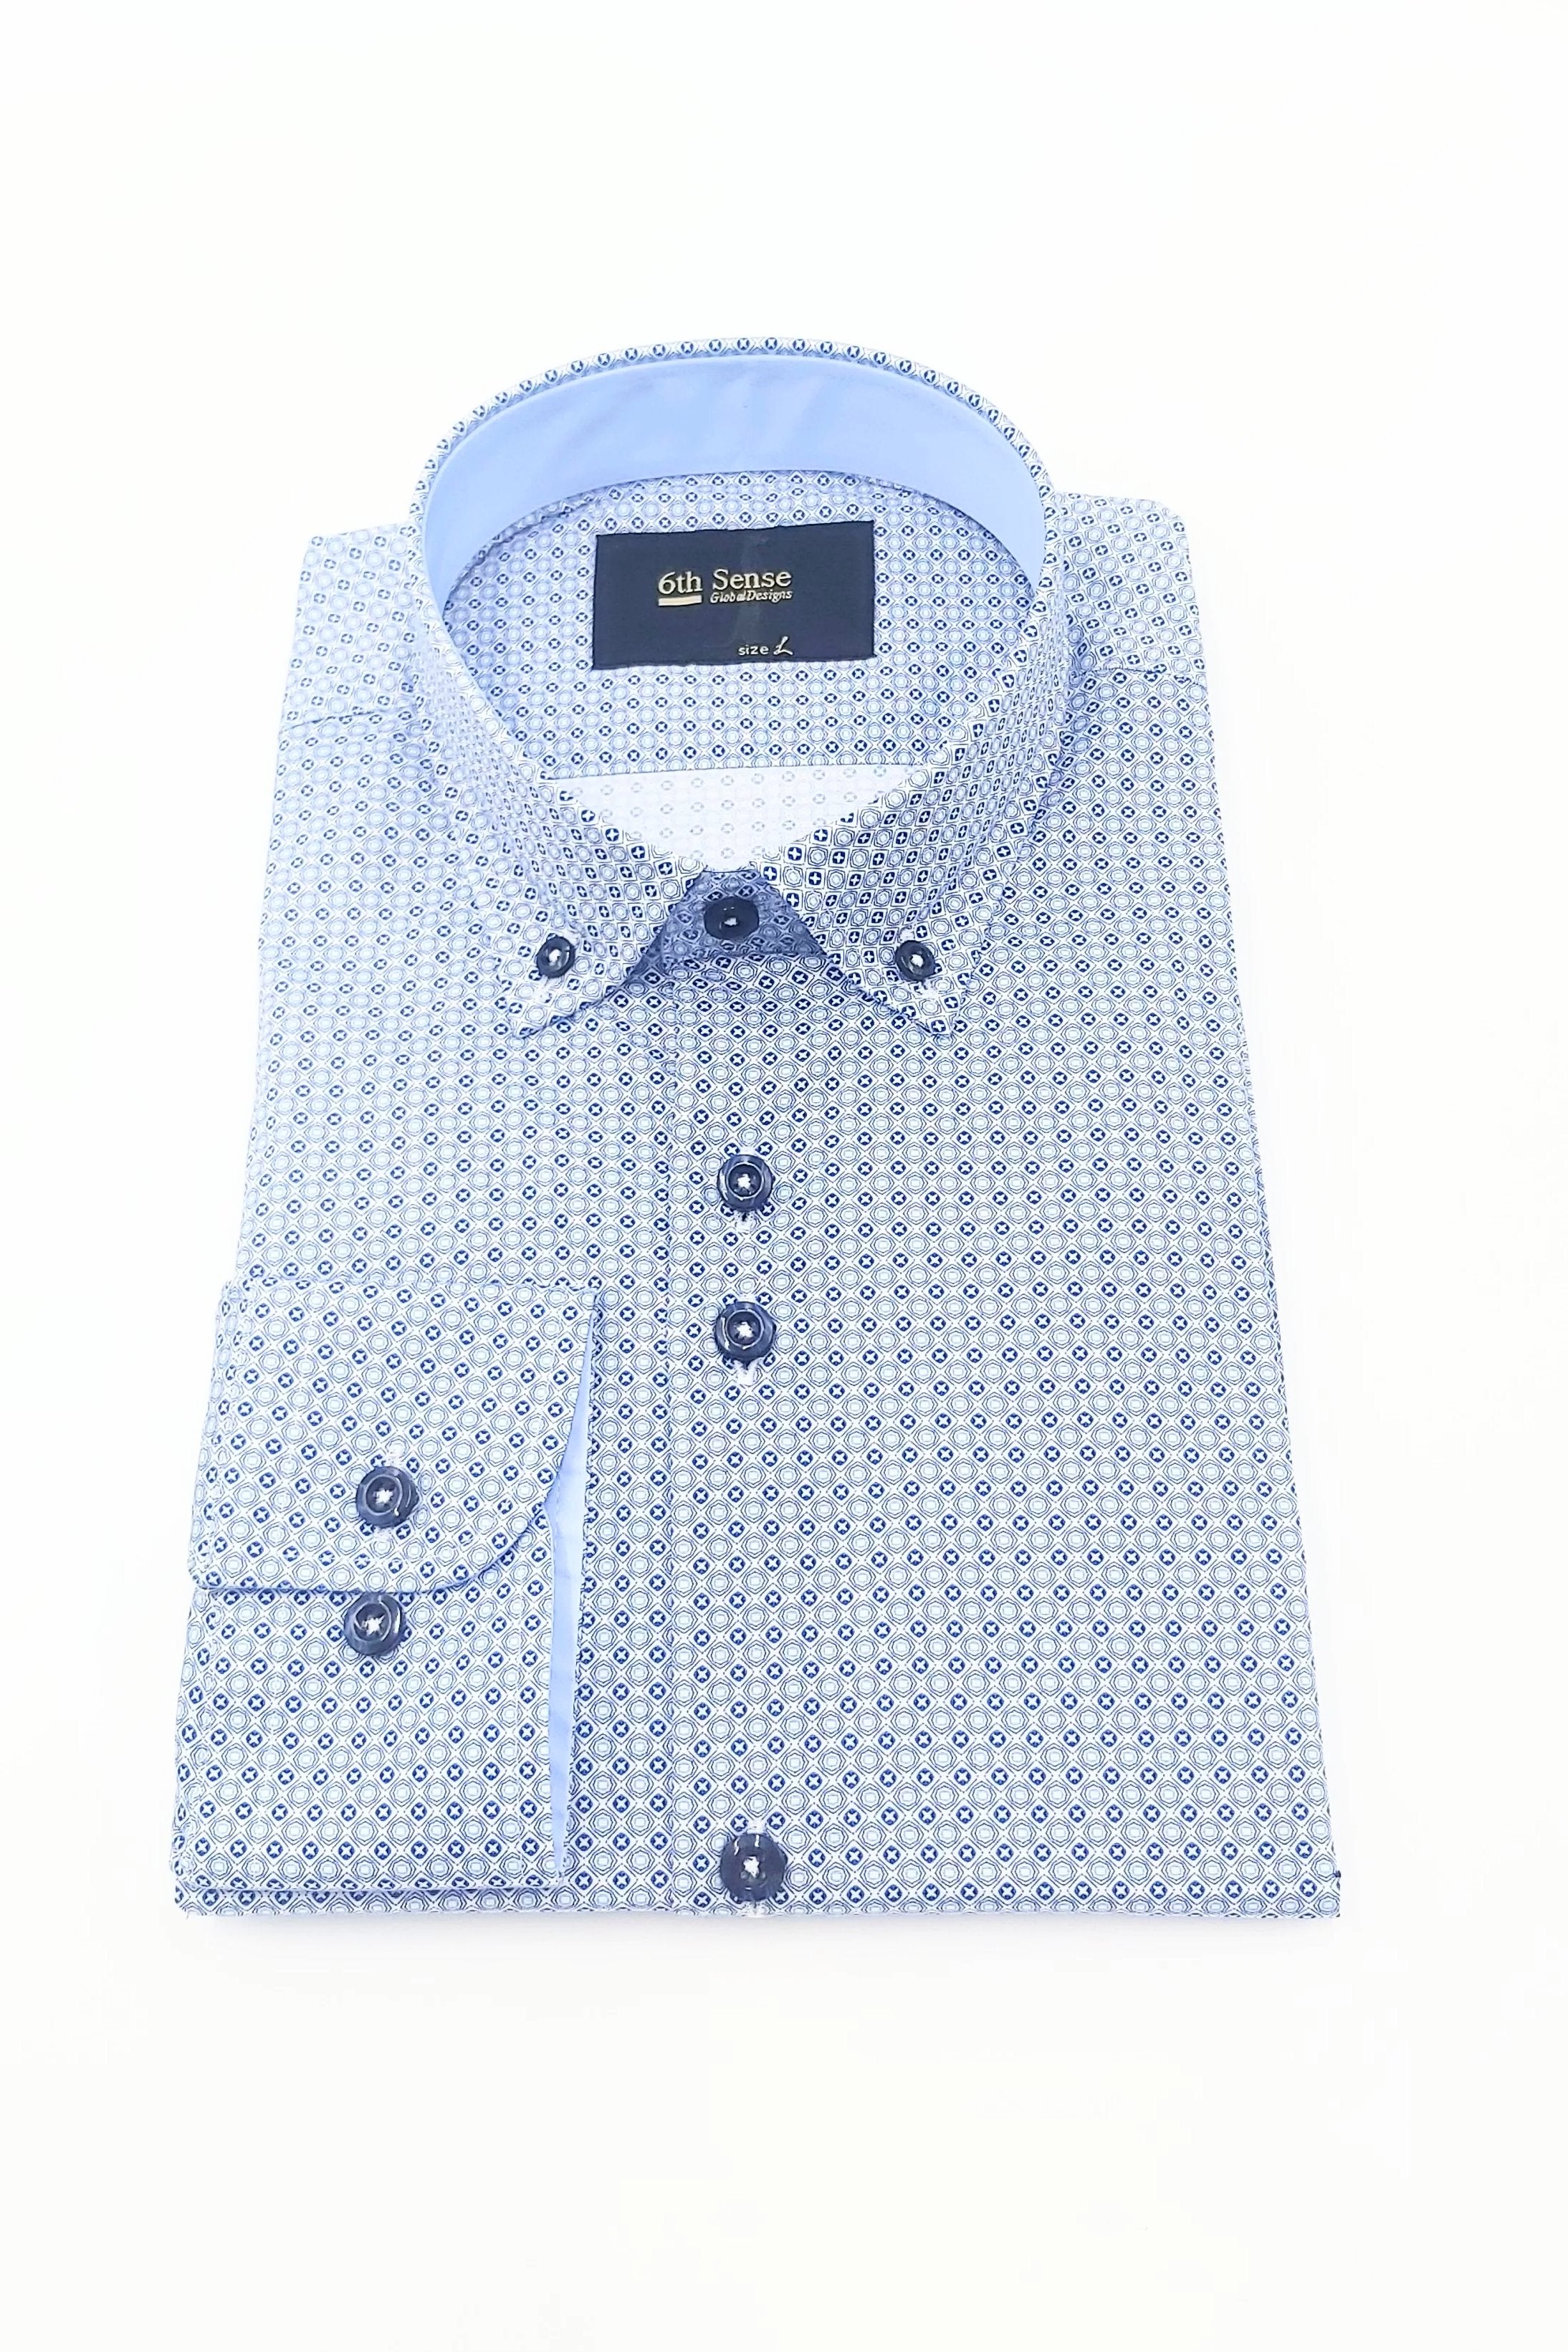 Men's Button Down Blue Diamond Pattern Shirt-Front View